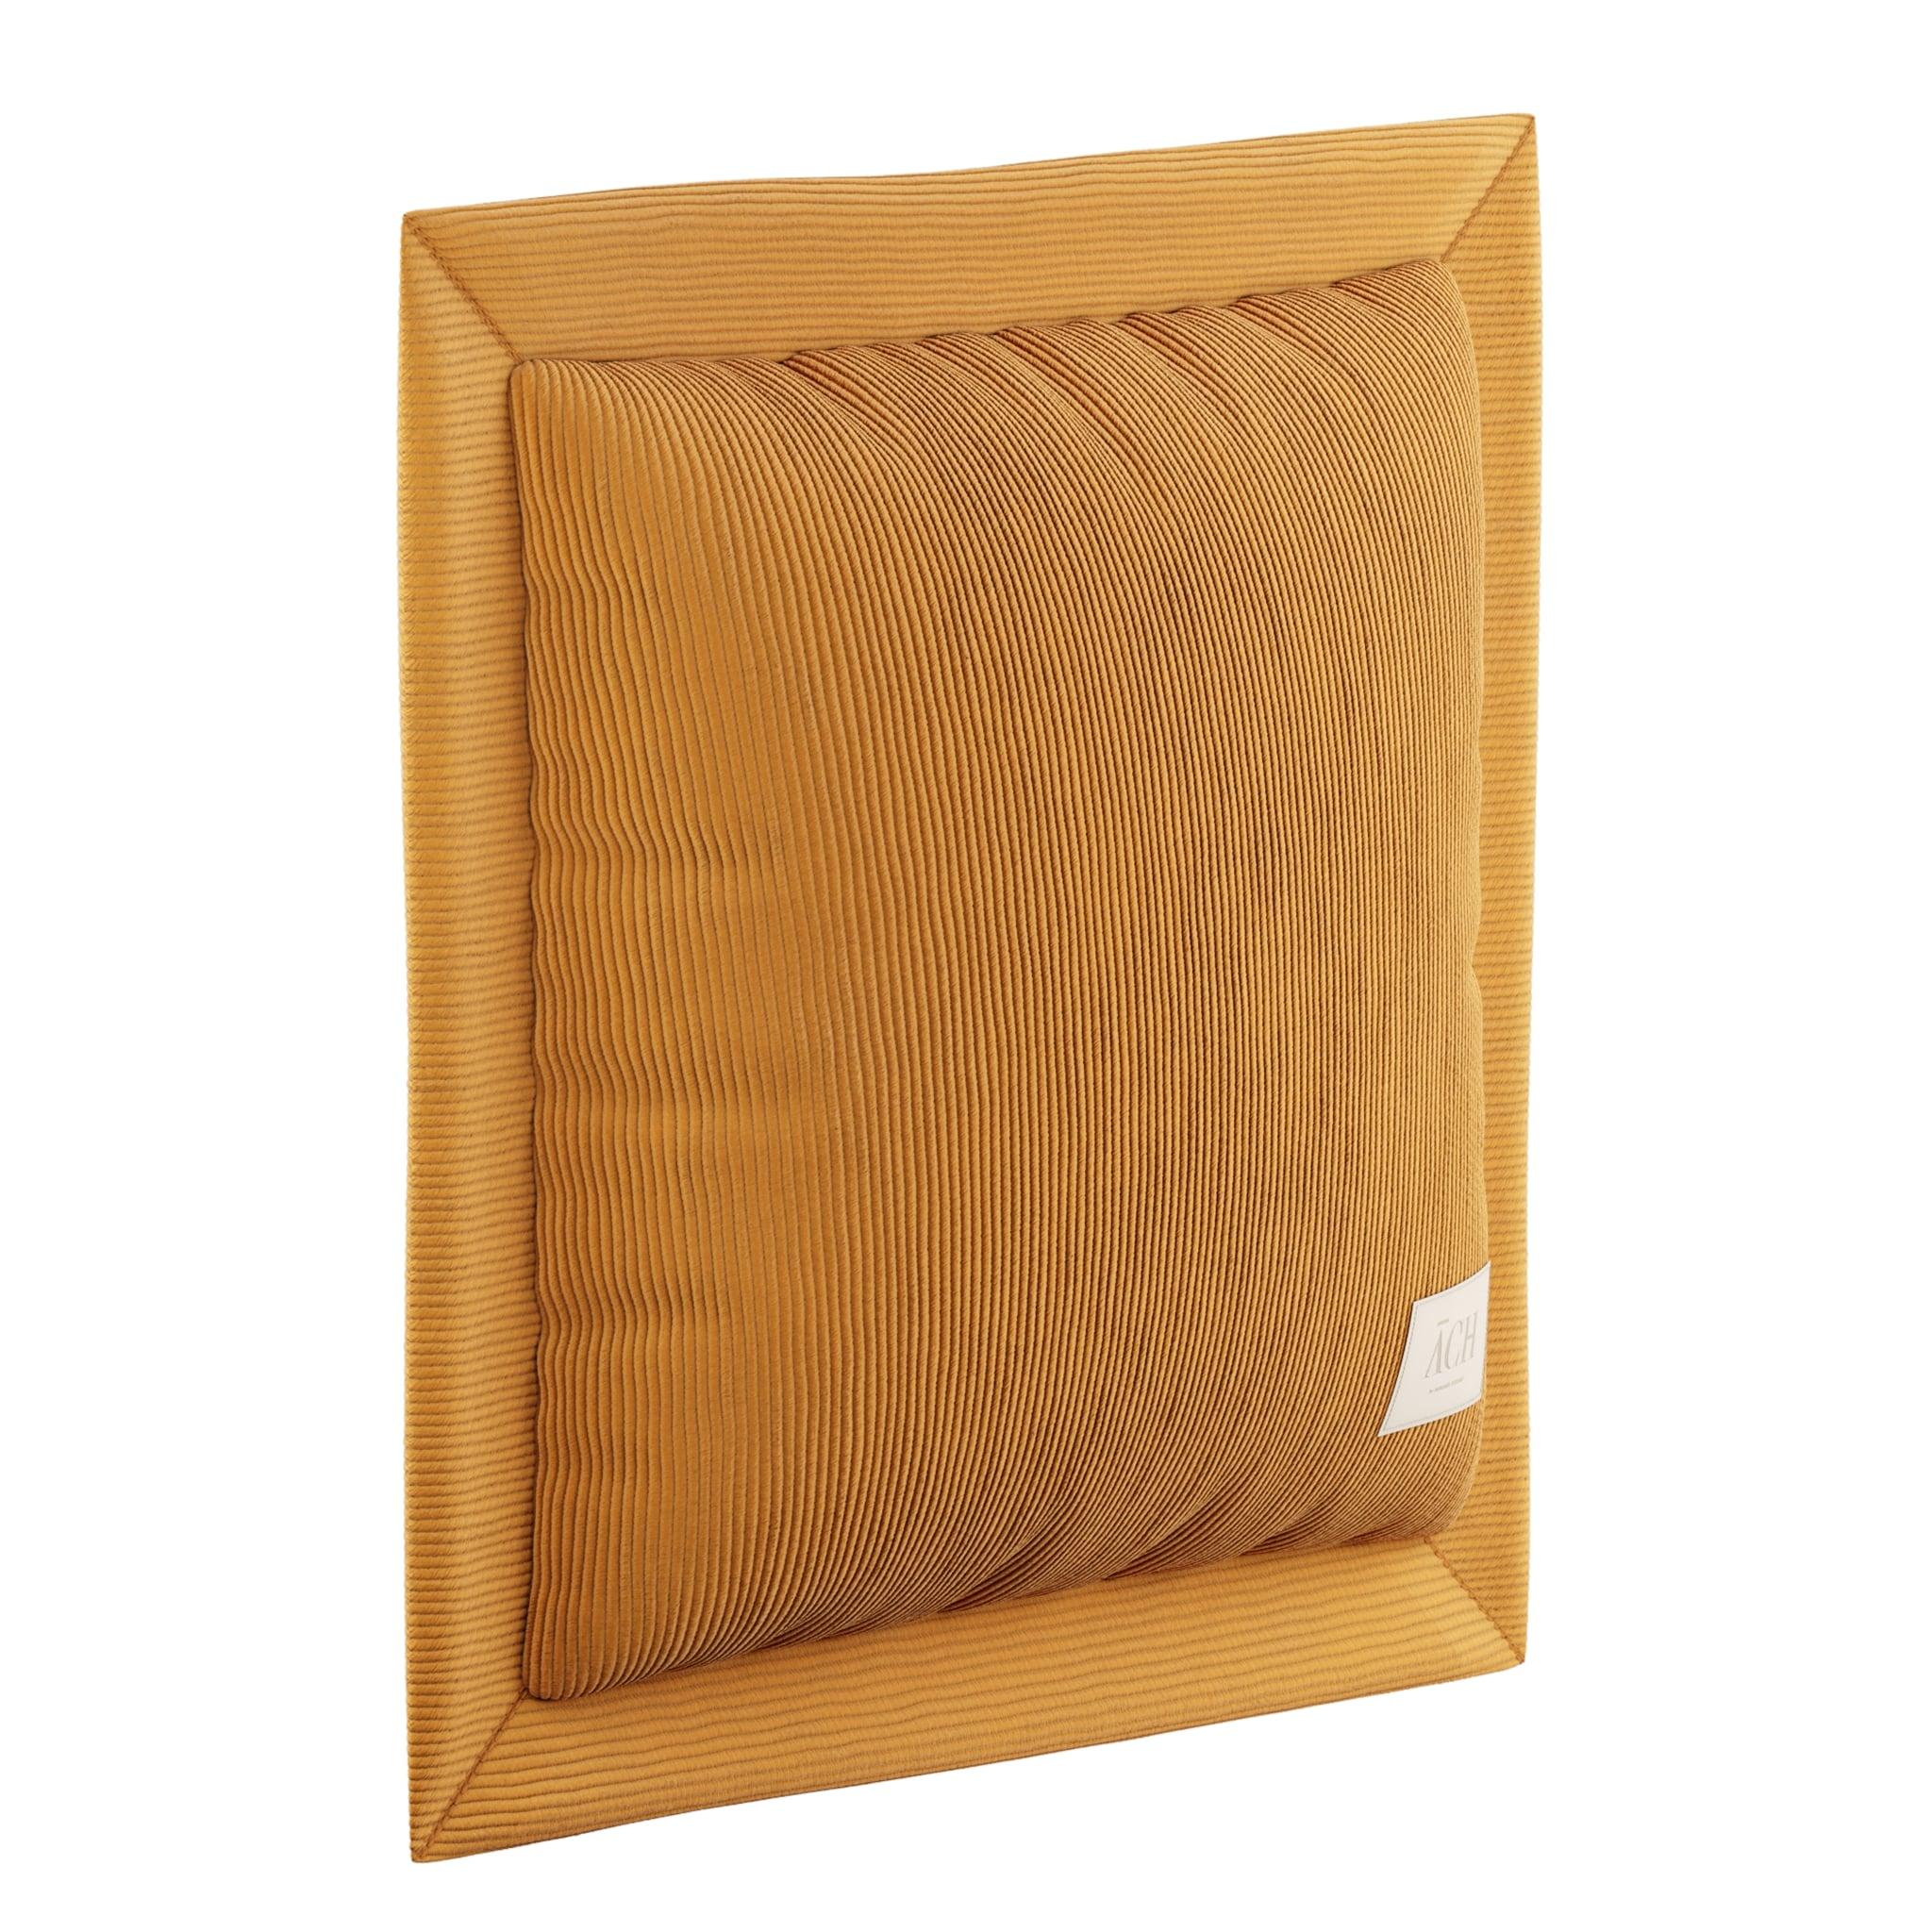 Corduroy Mostaza Square Throw Pillow, Mid-Century Modern yellow cushion 39